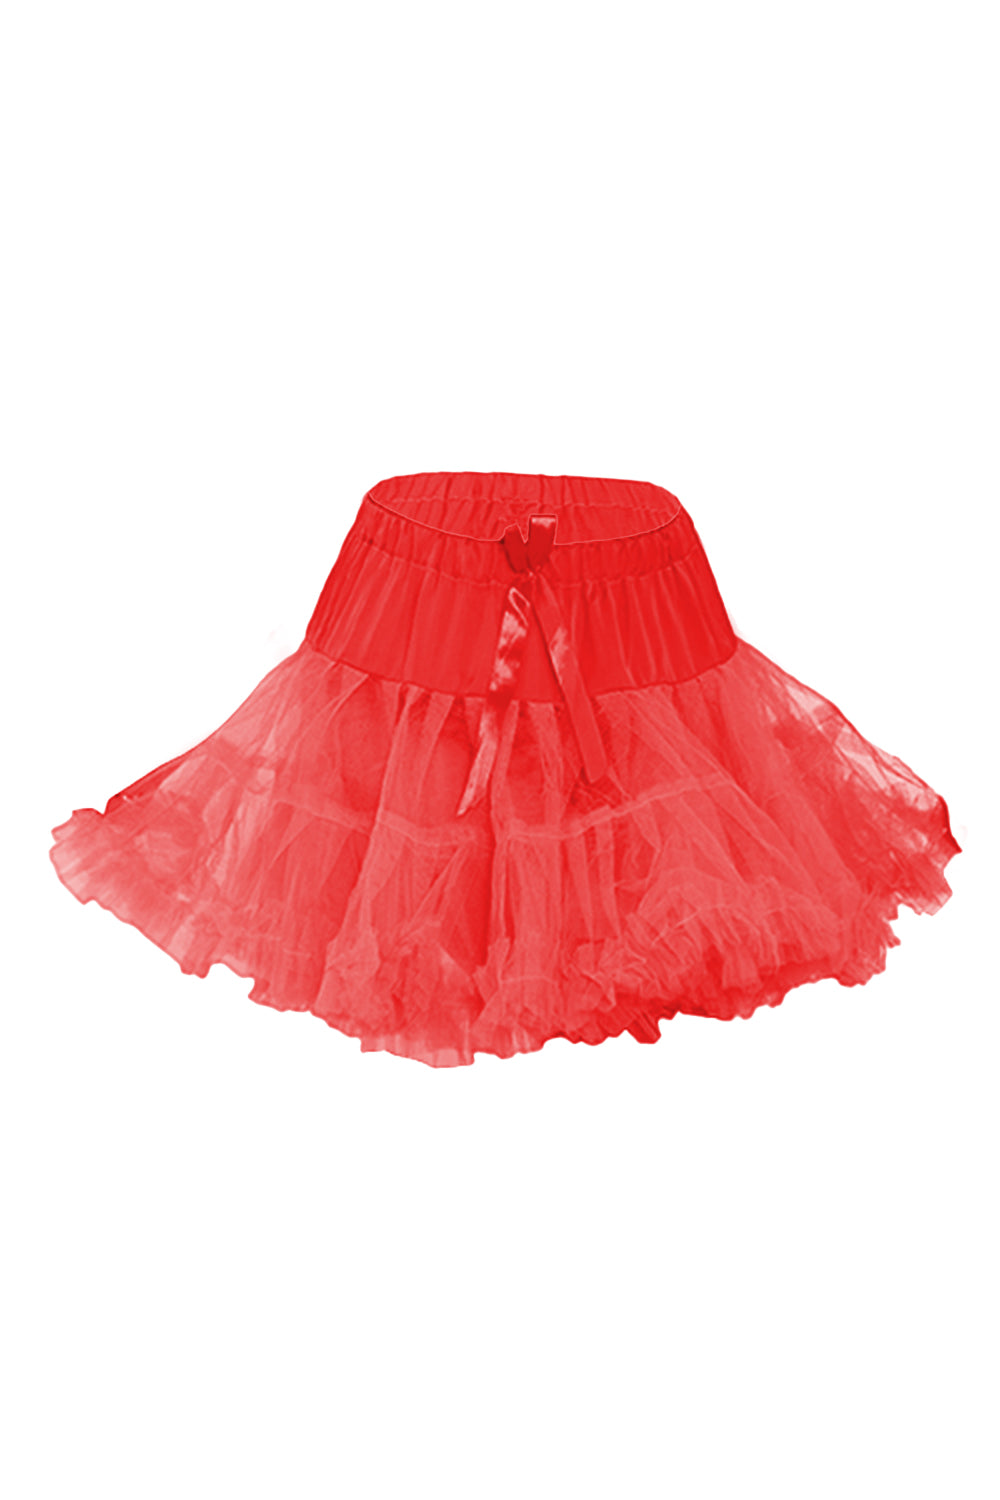 Crazy Chick Girl  Ruffle Petticoat Tutu Skirt